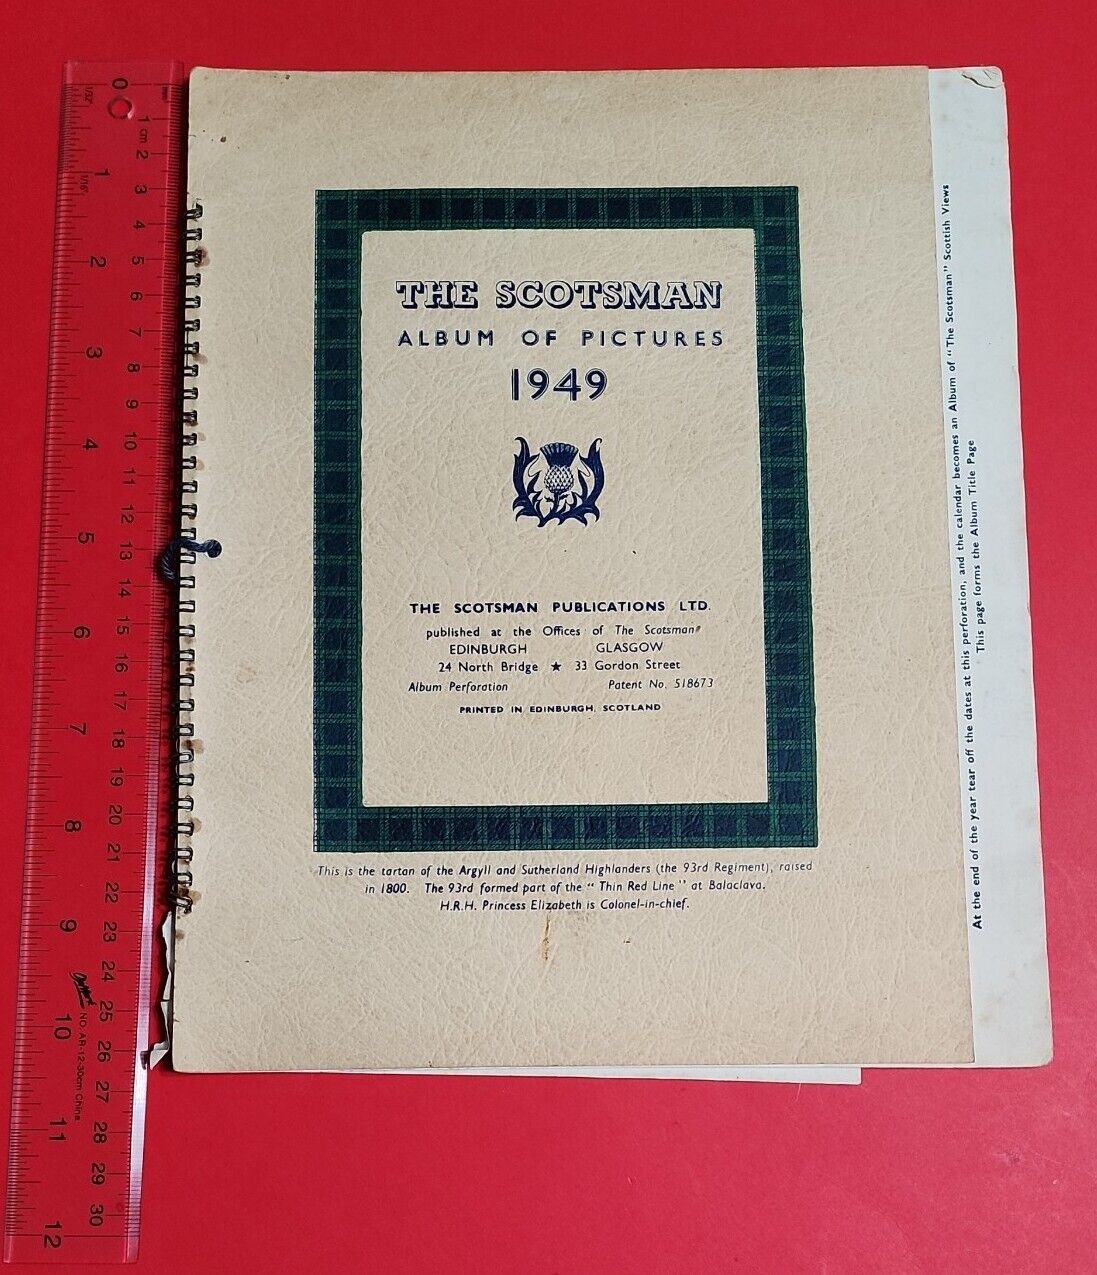 VTG 1949The Scotsman Album Of Pictures Calendar photo album printed in scotland